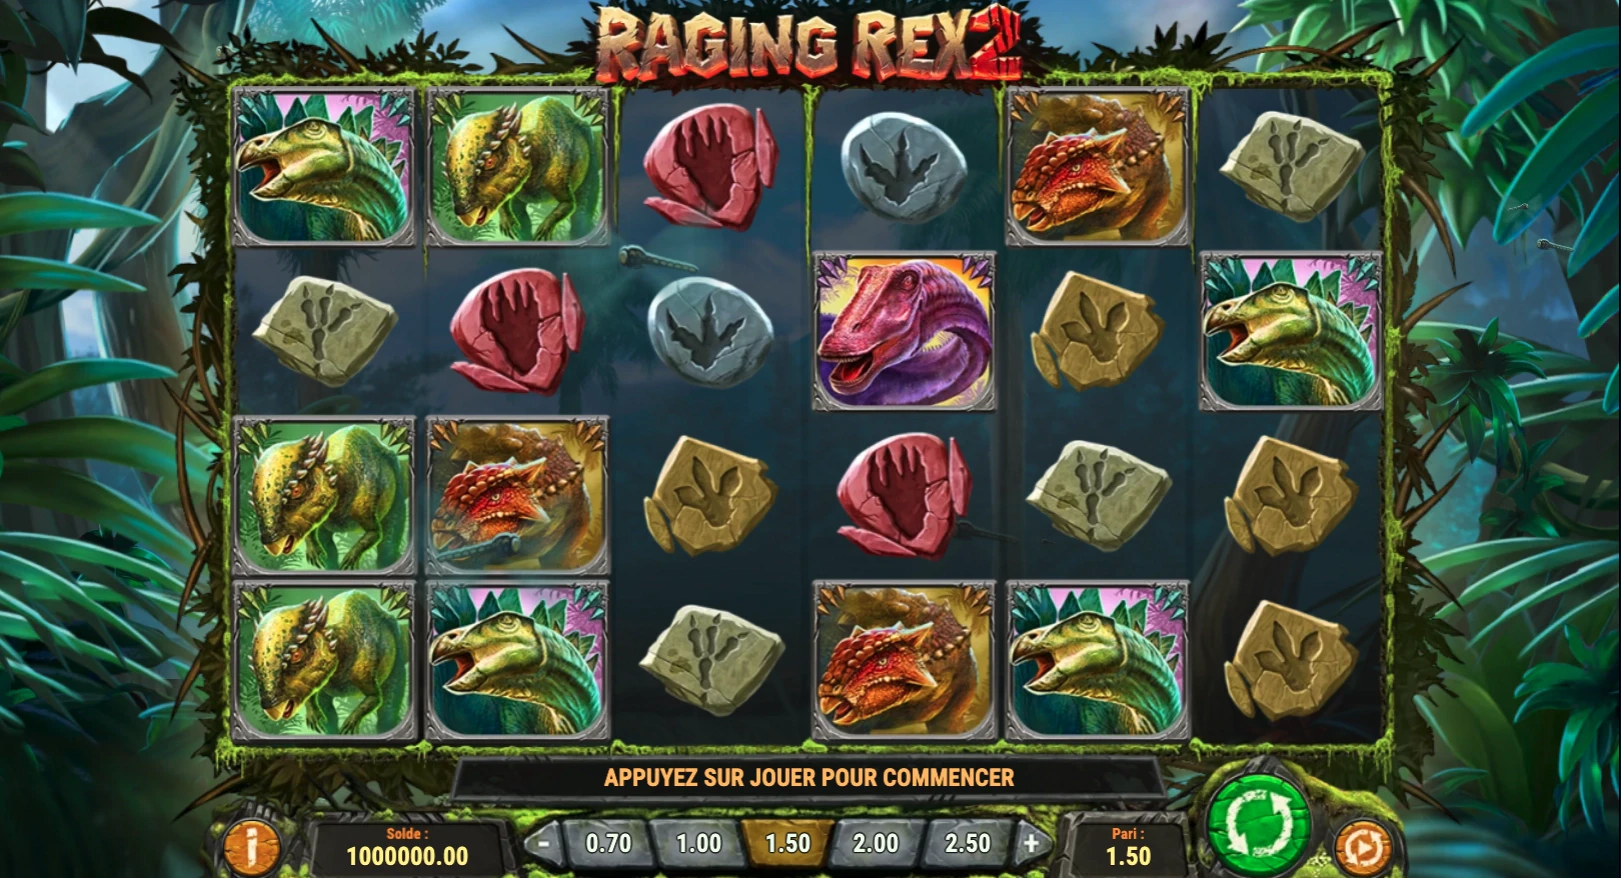 Grille de départ de la machine a sous Raging Rex 2 de Play’n GO